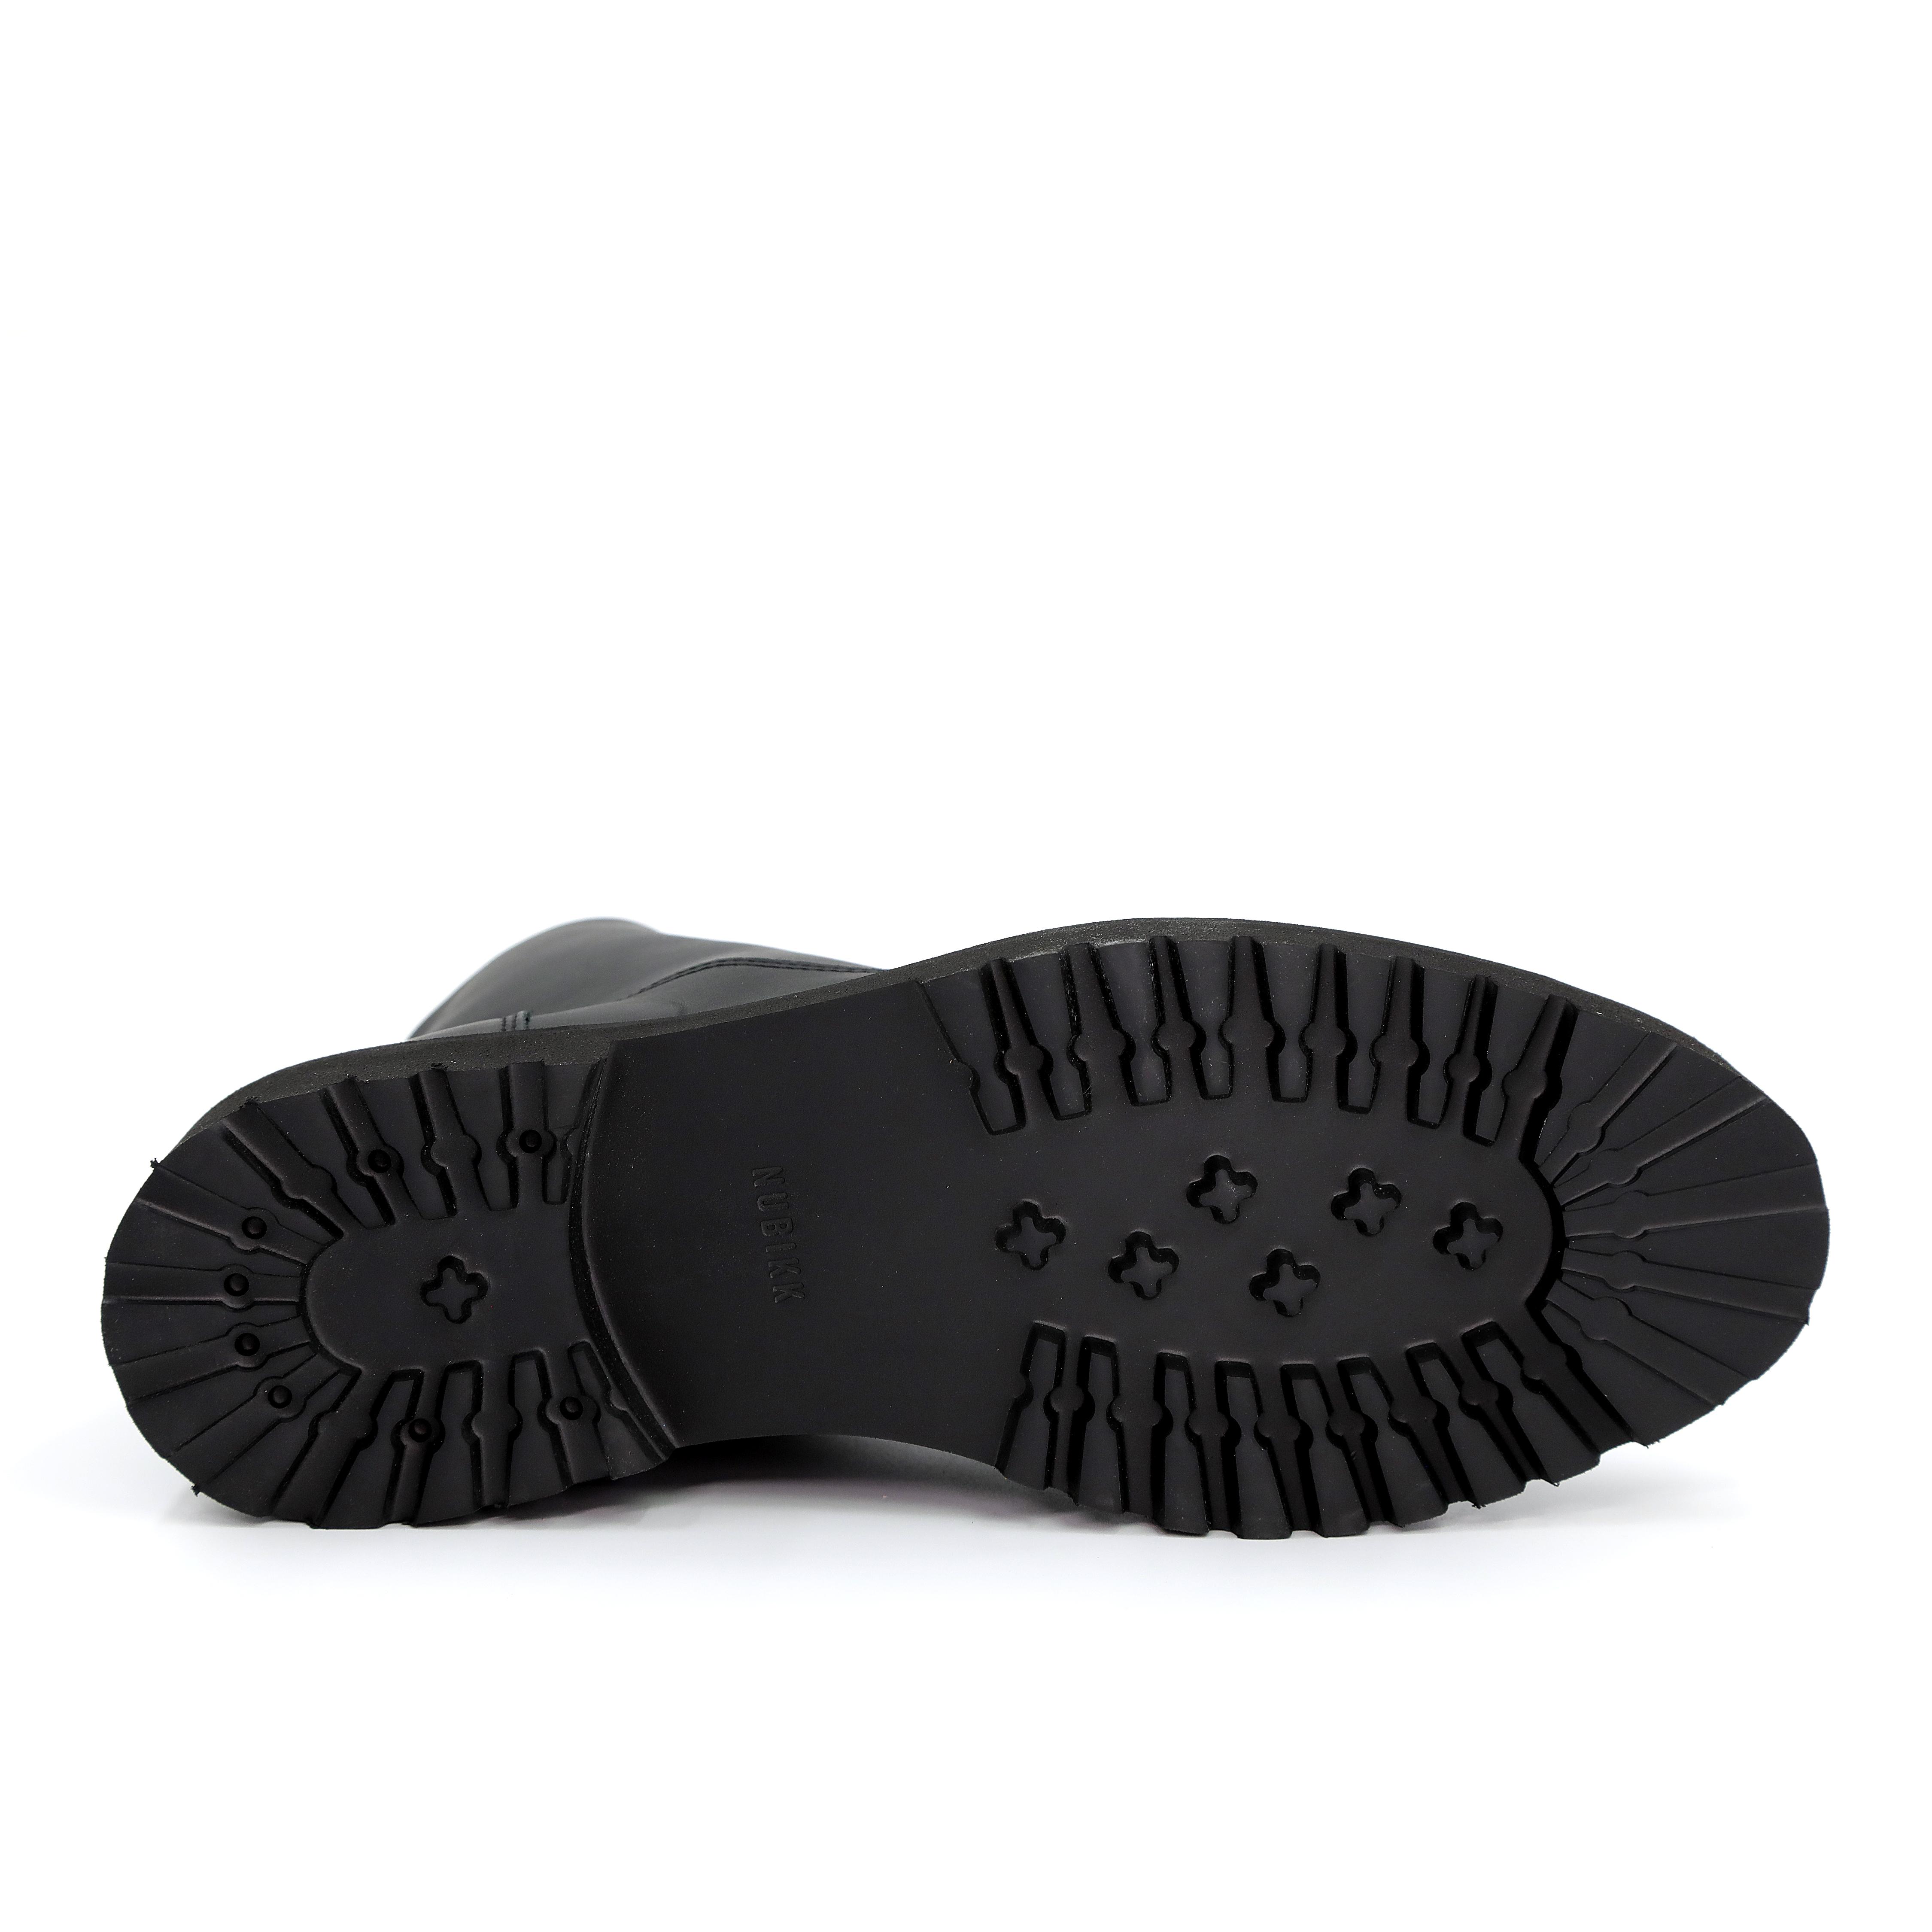 Мужские ботинки Nubikk, черные, цвет черный, размер 43 - фото 5